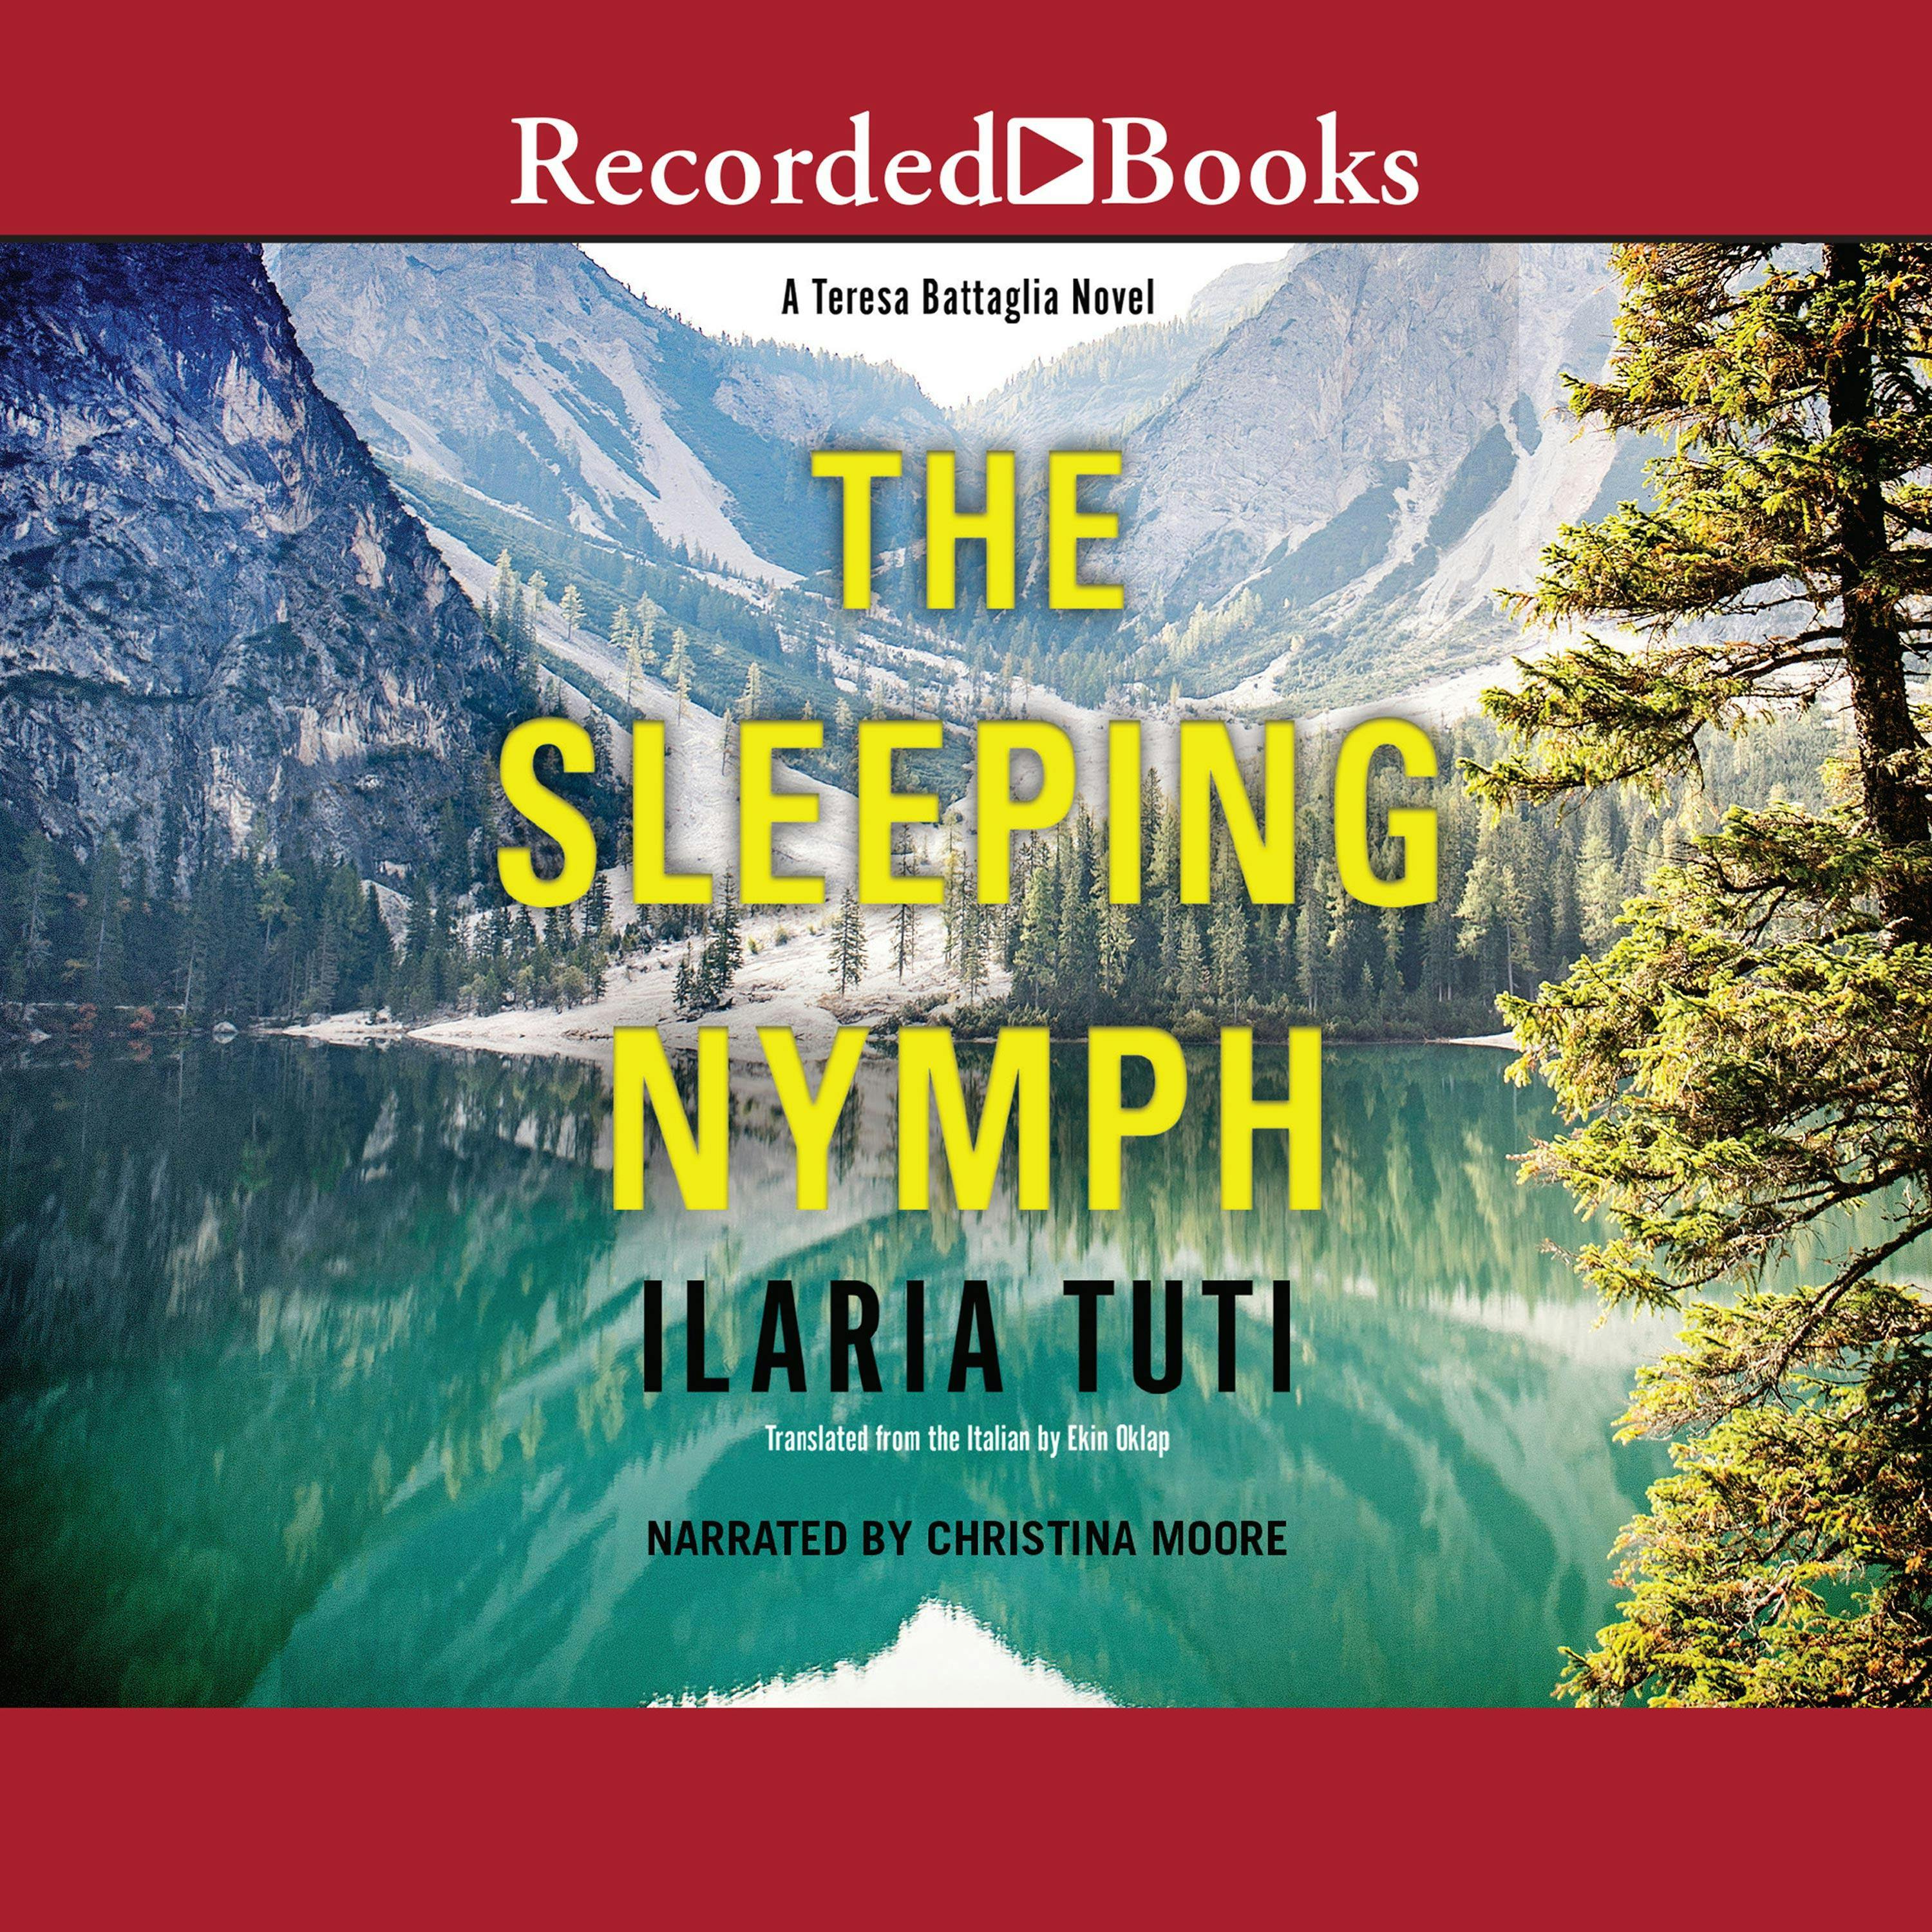 The Sleeping Nymph - Ilaria Tuti